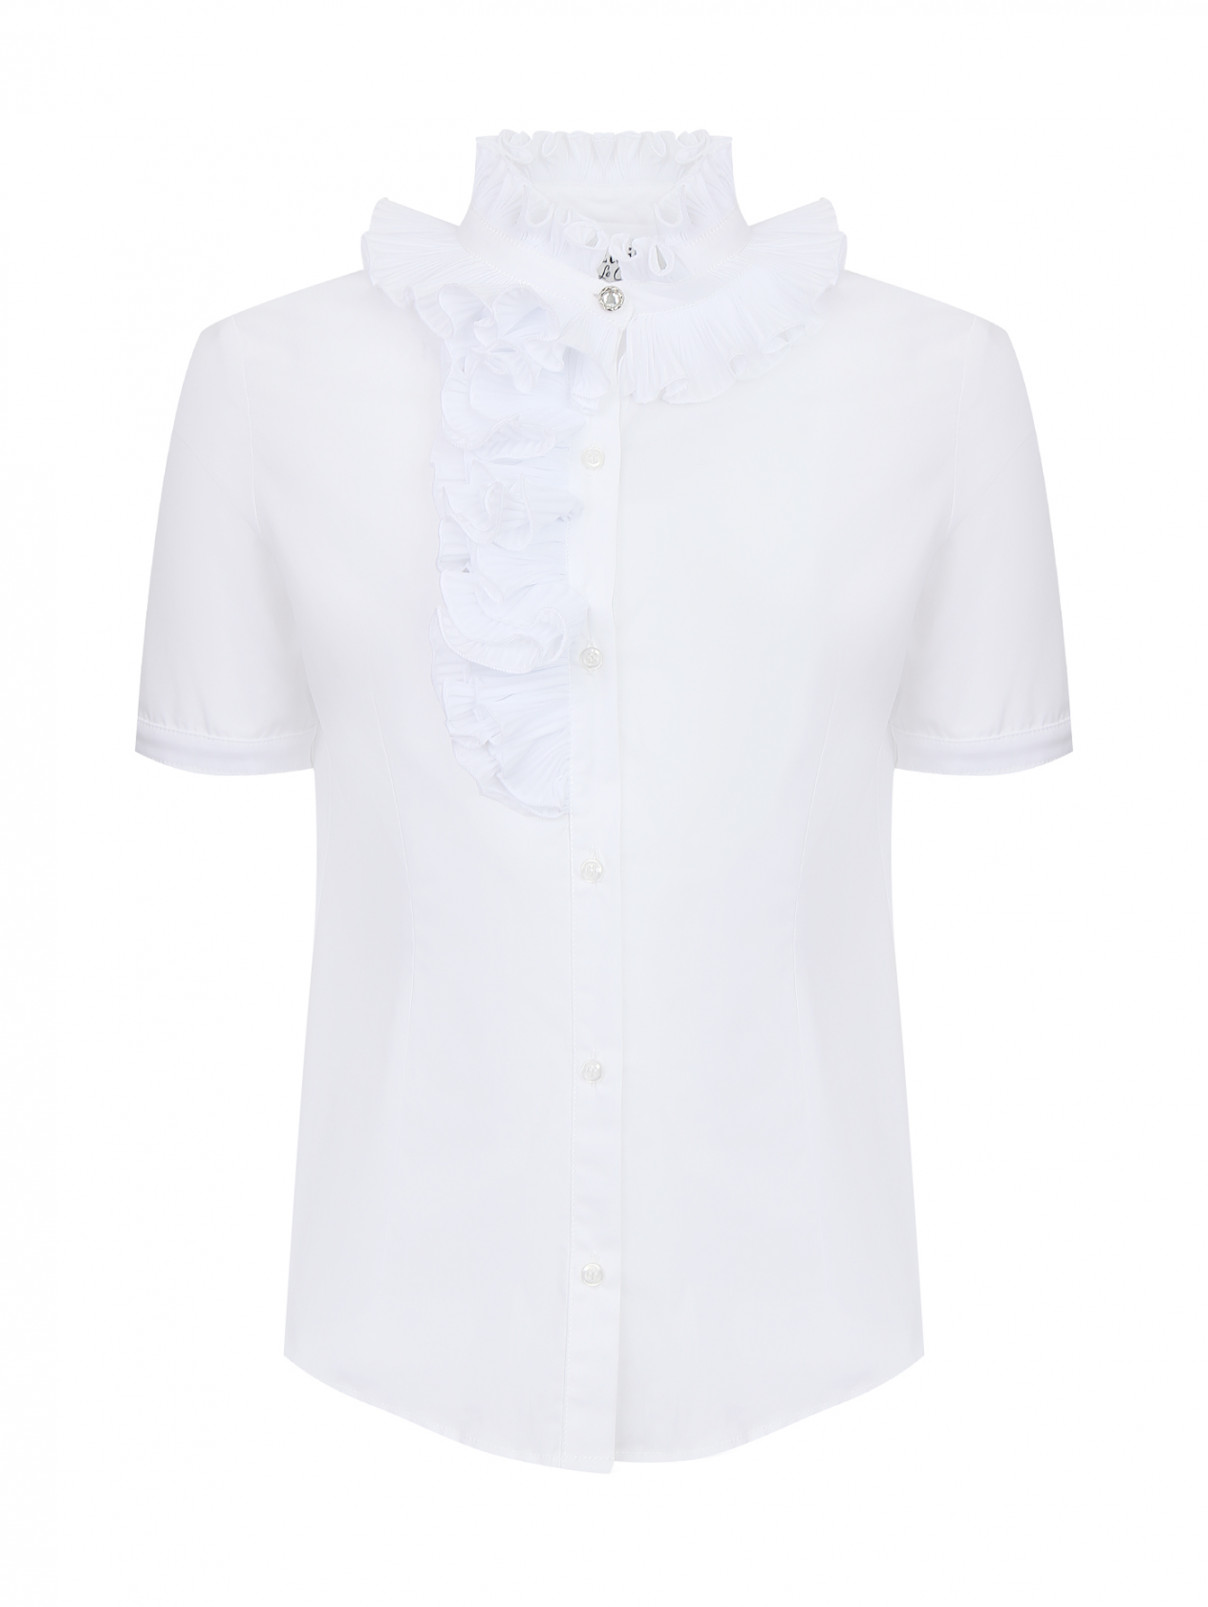 Хлопковая блуза с коротким рукавом Aletta Couture  –  Общий вид  – Цвет:  Белый